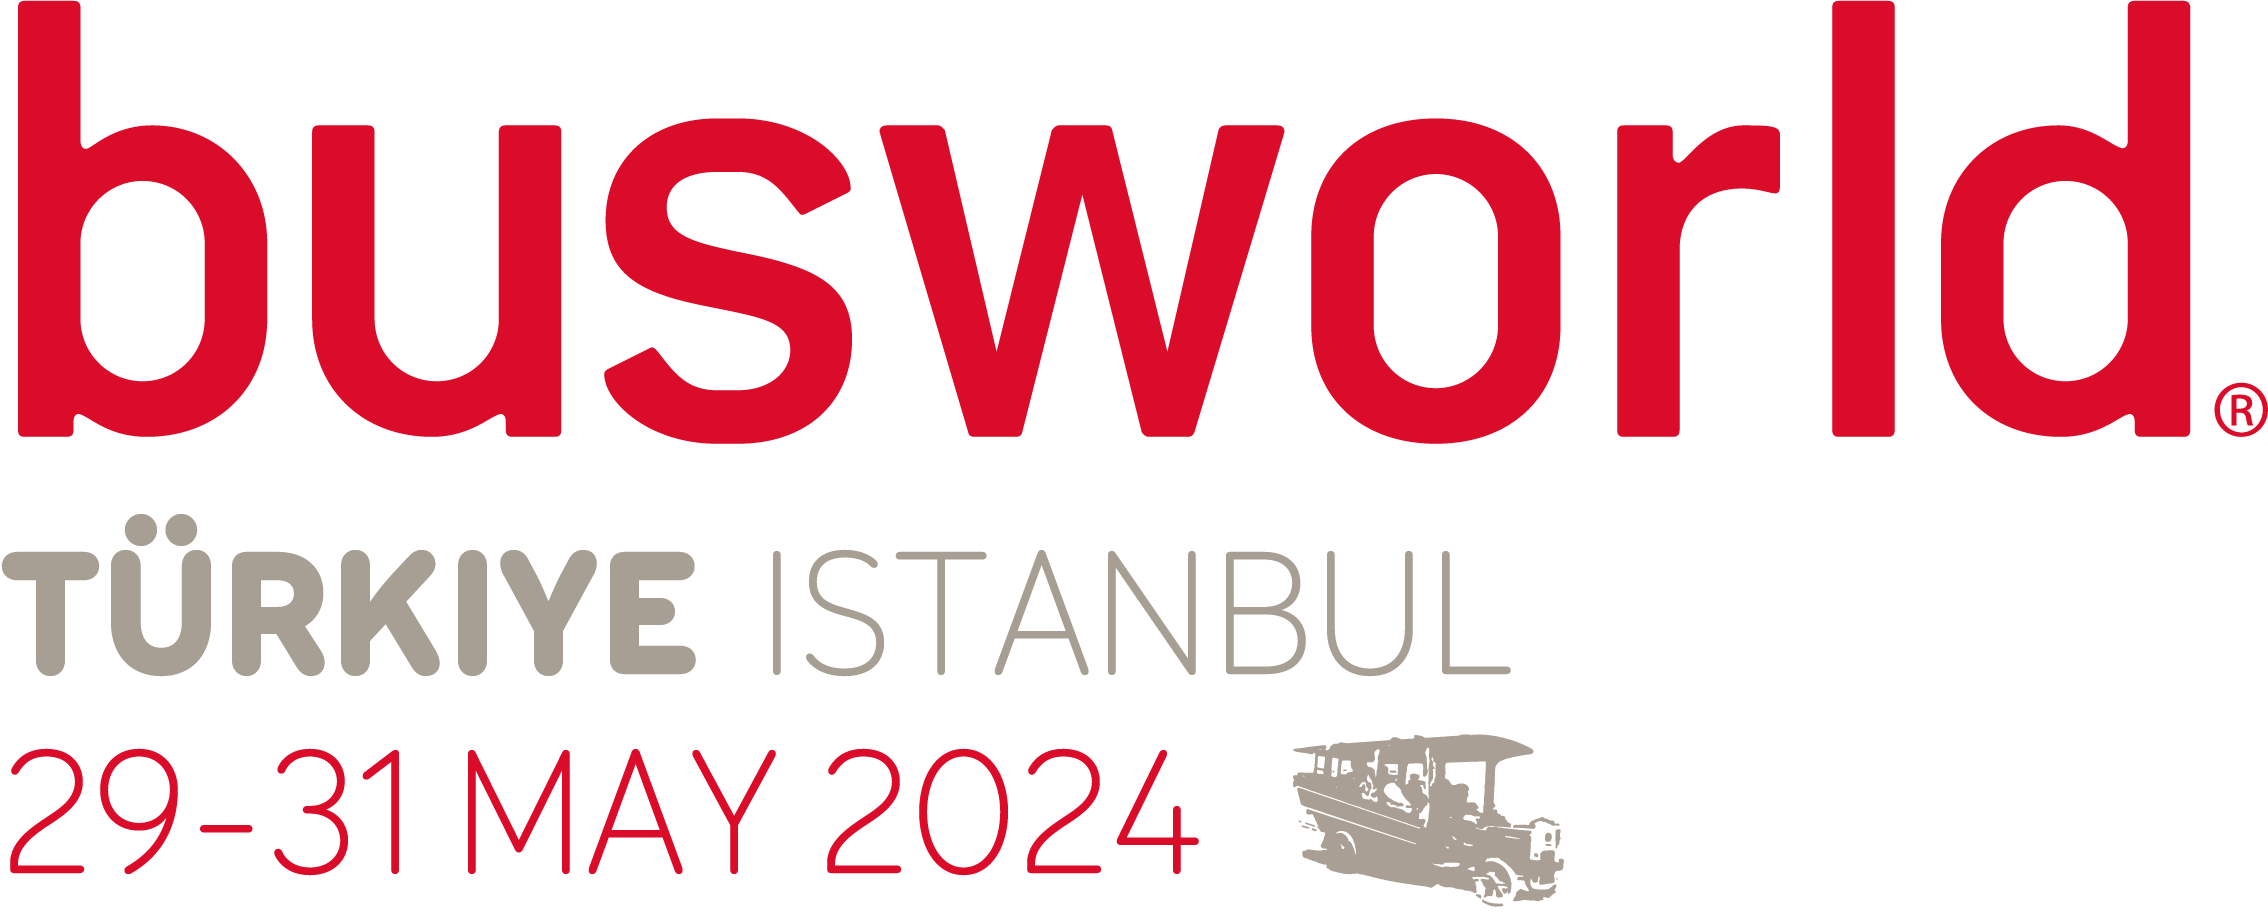 Busworld Türkiye 2024 logo